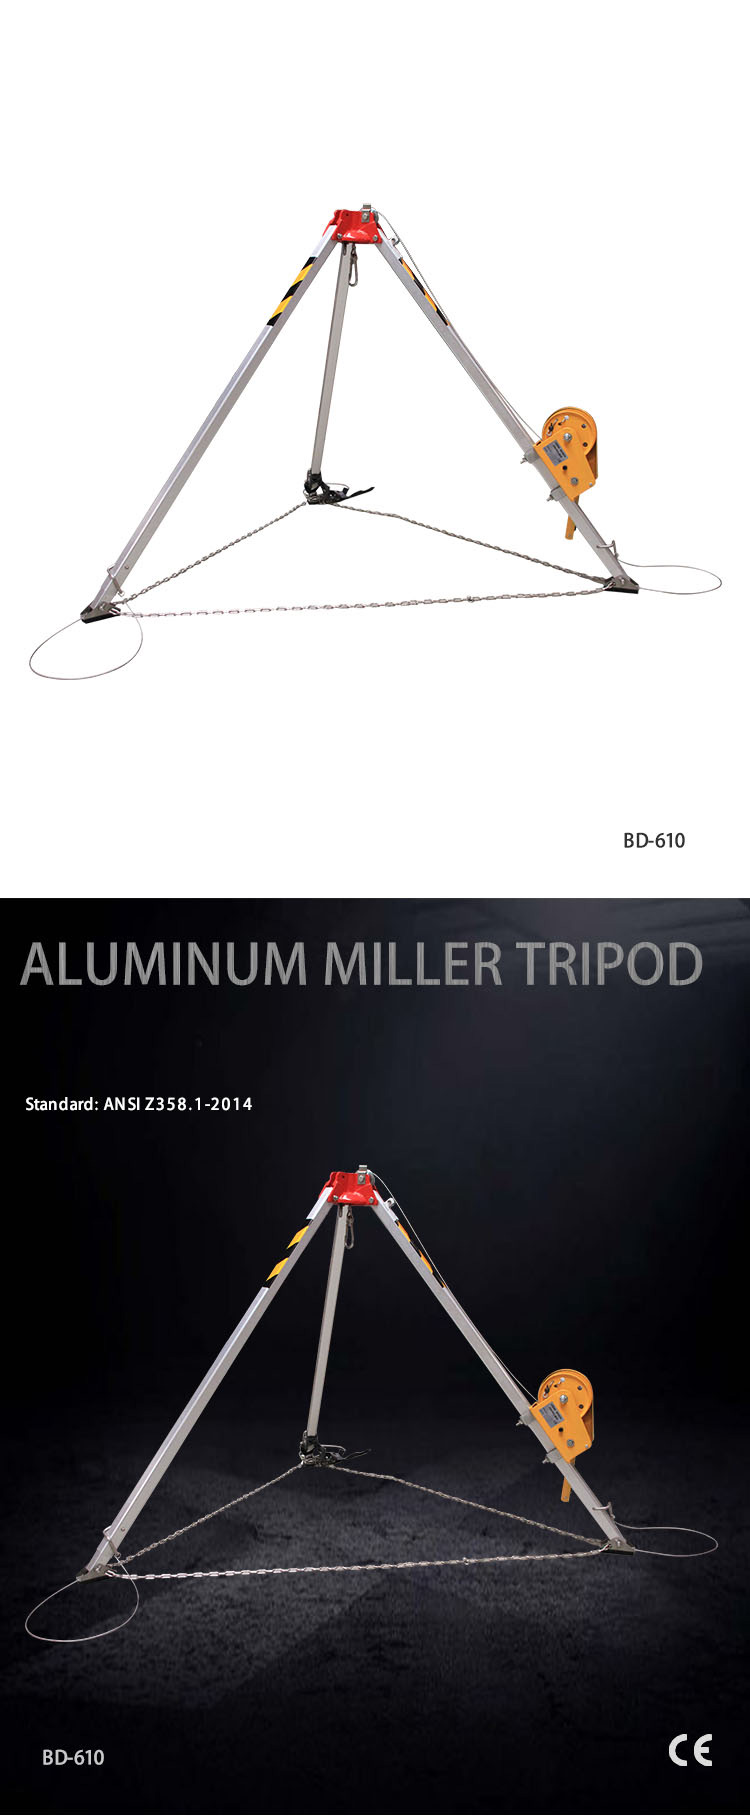 Aluminum Tripod BD-610